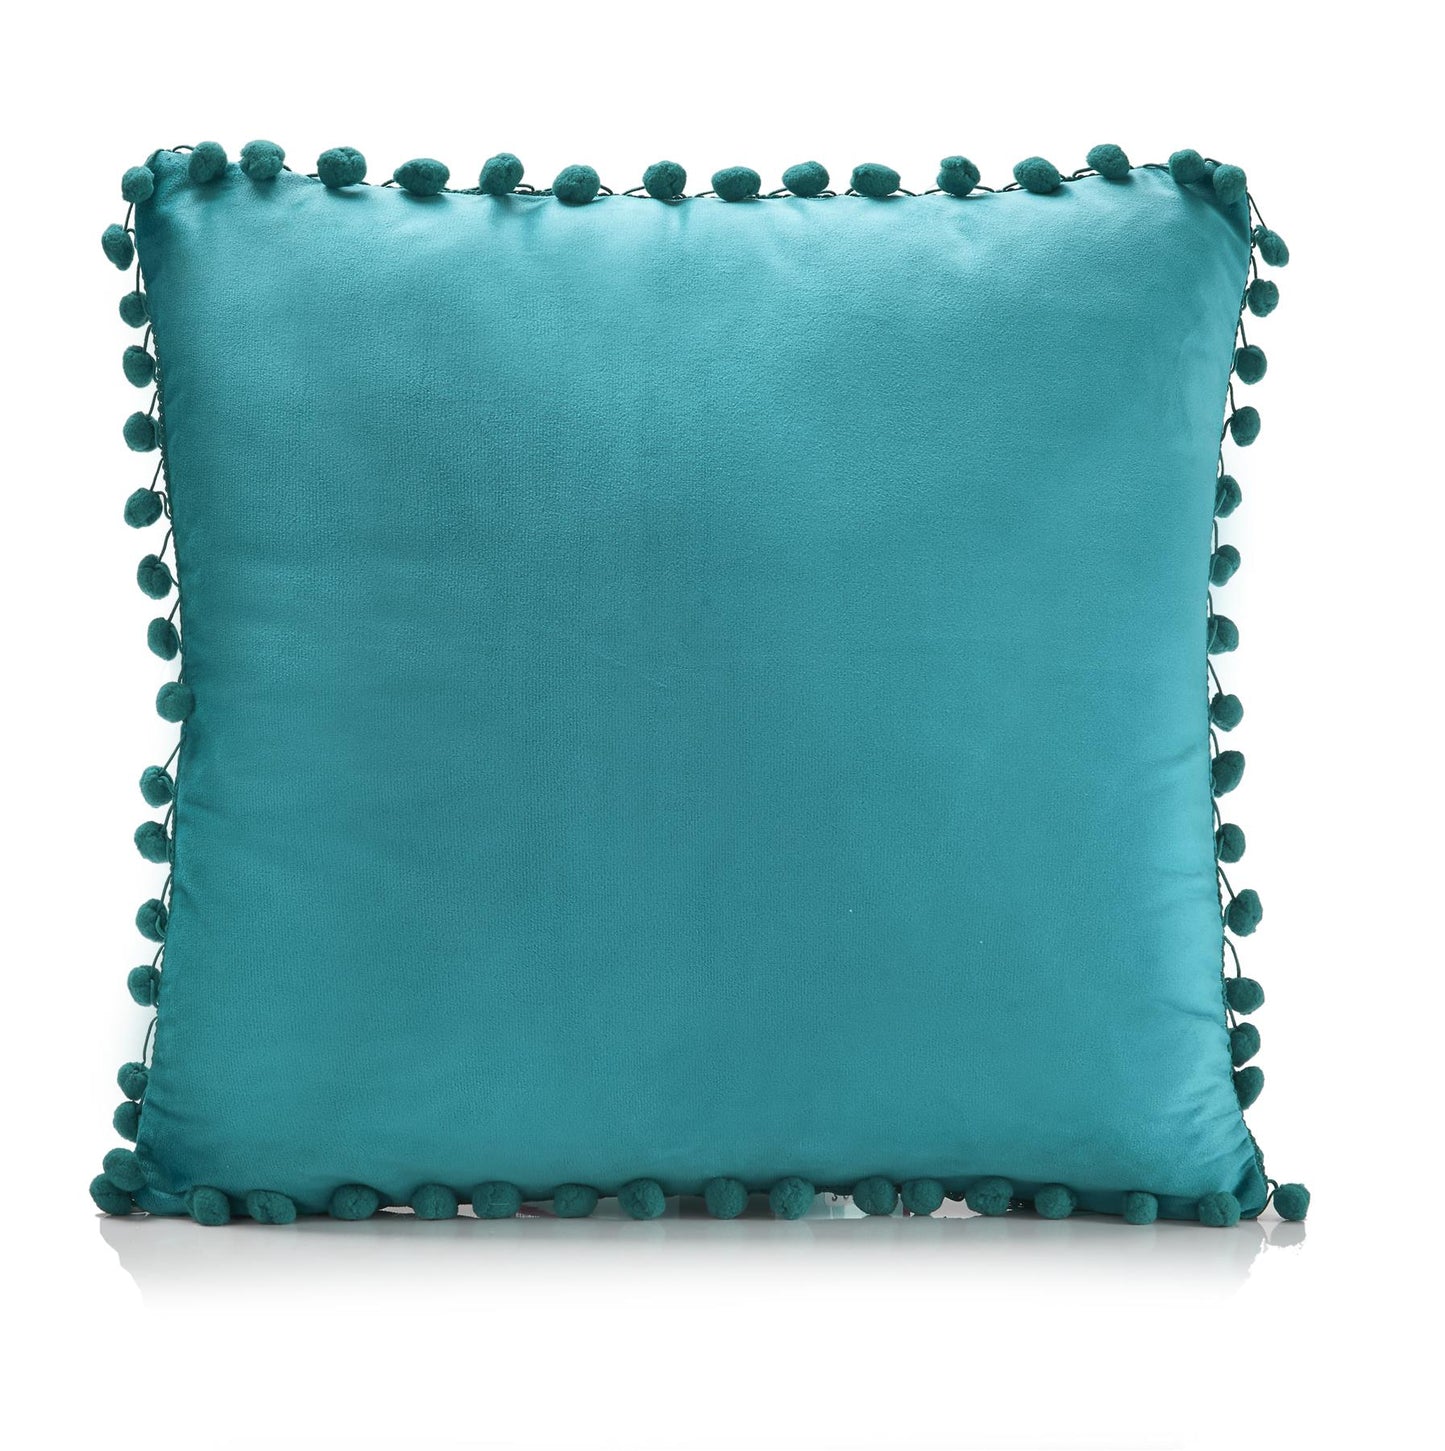 Teal Pom Pom Cushion Covers